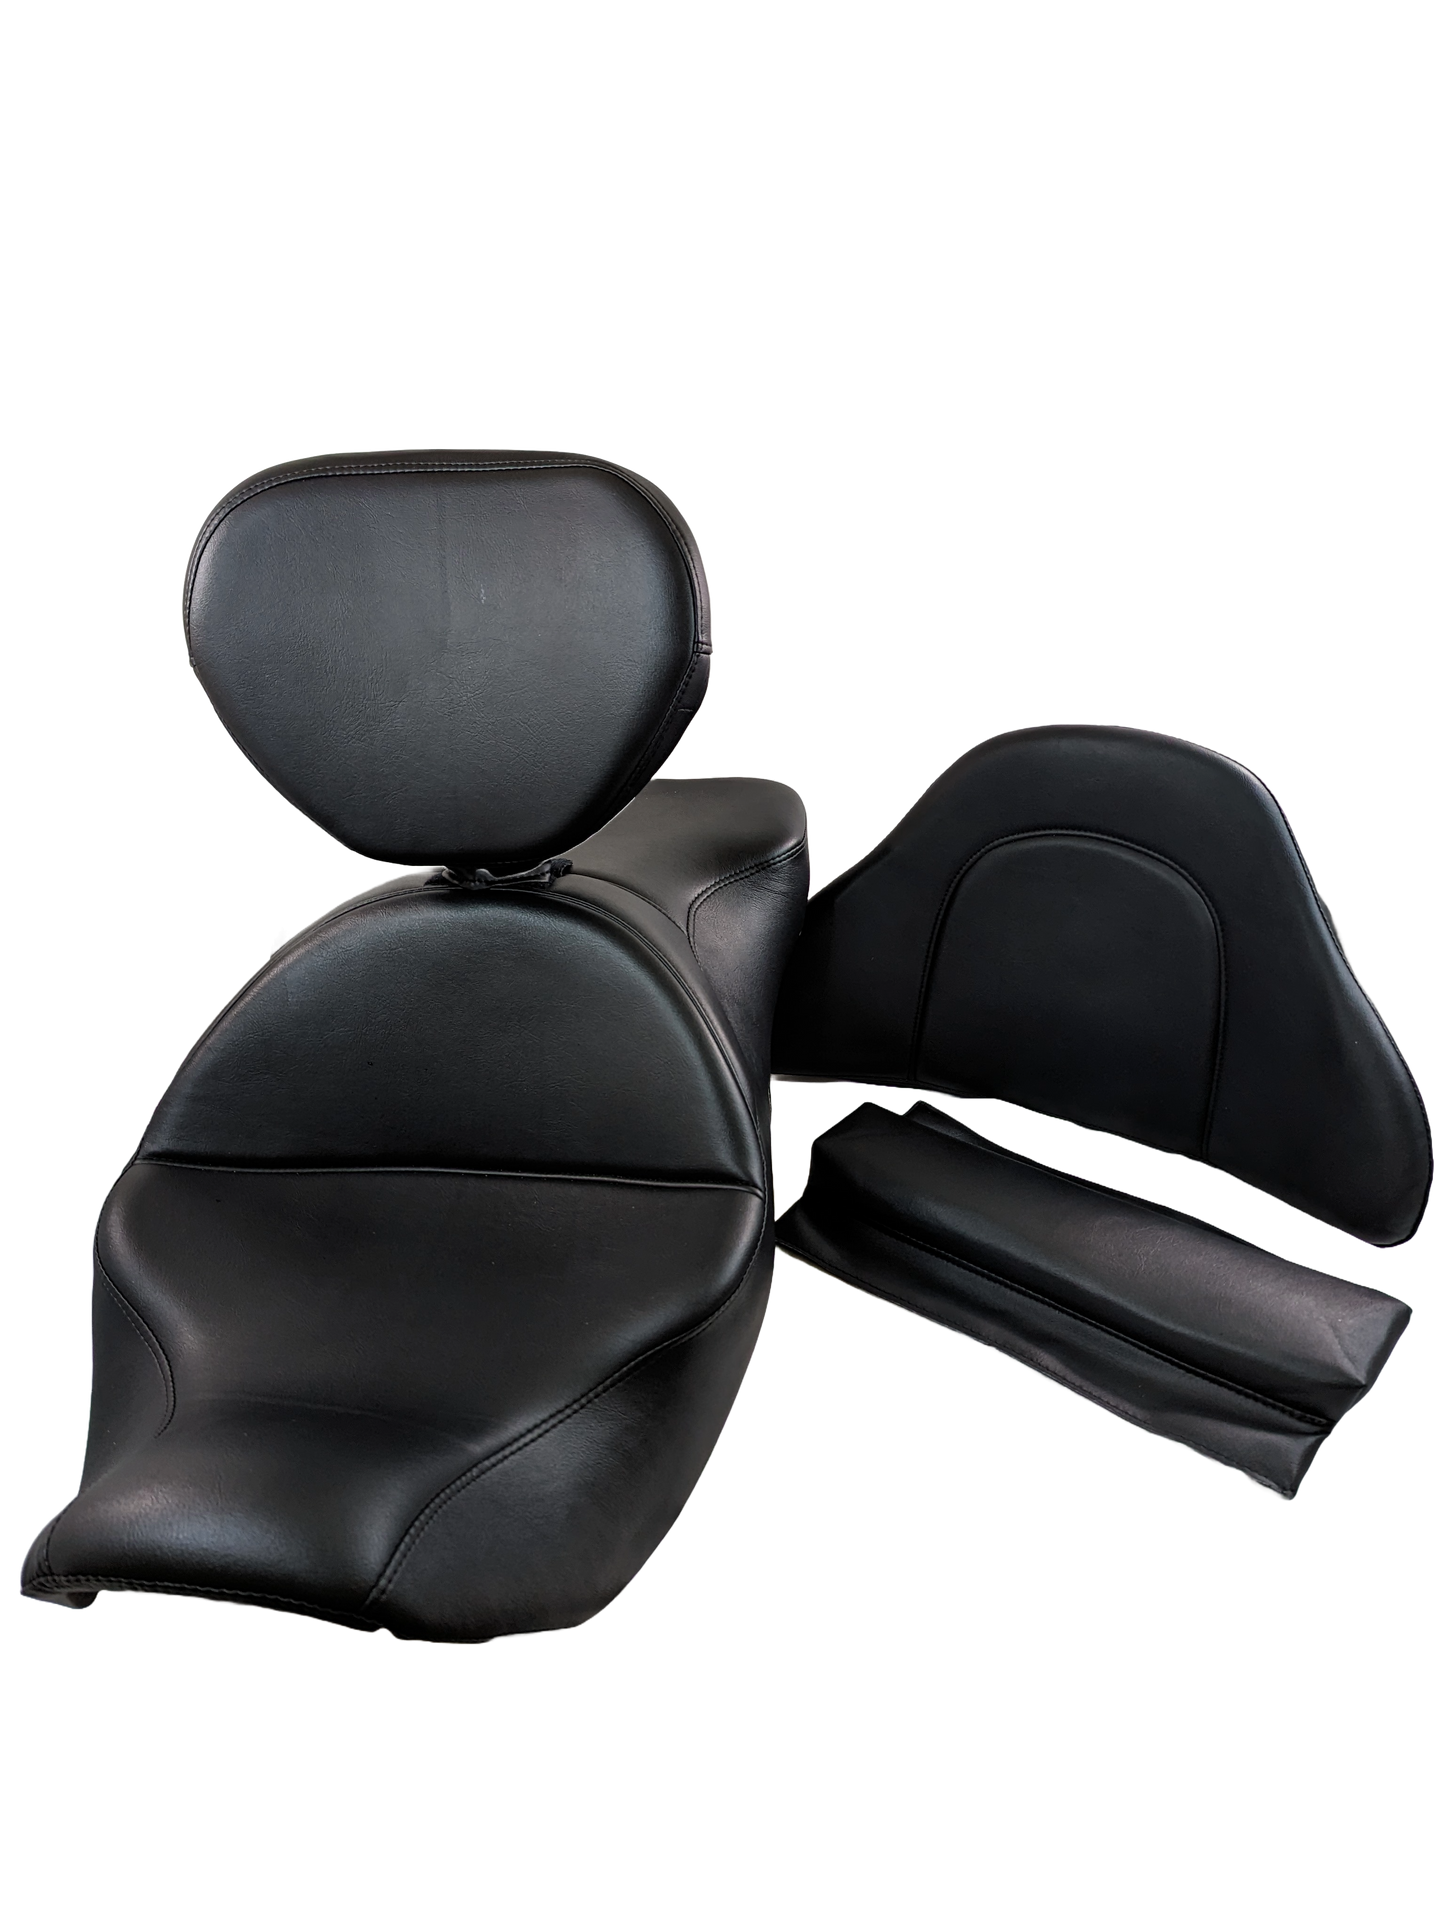 Honda // Goldwing 1800 Black Pearl Comfort Seat